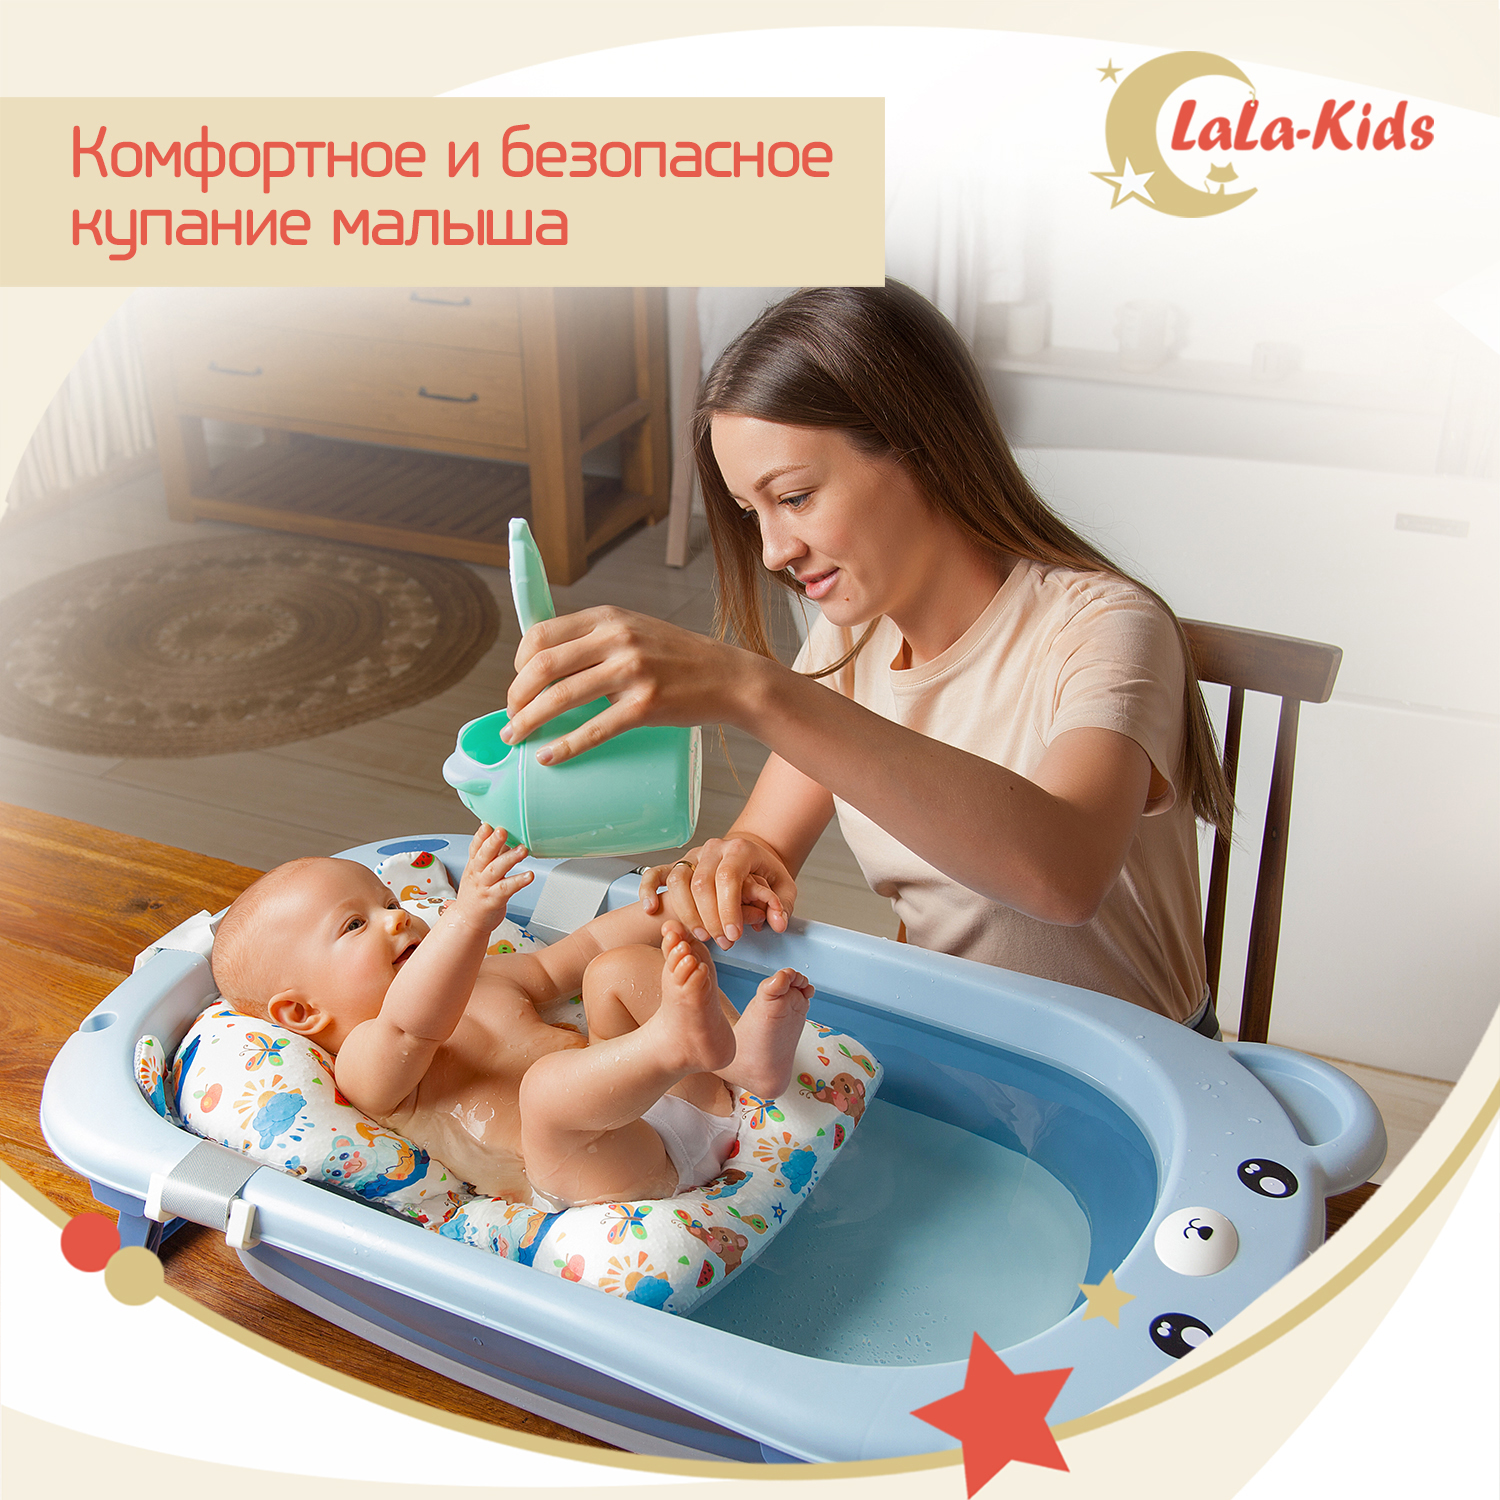 Детская ванночка LaLa-Kids складная с матрасиком для купания новорожденных - фото 12